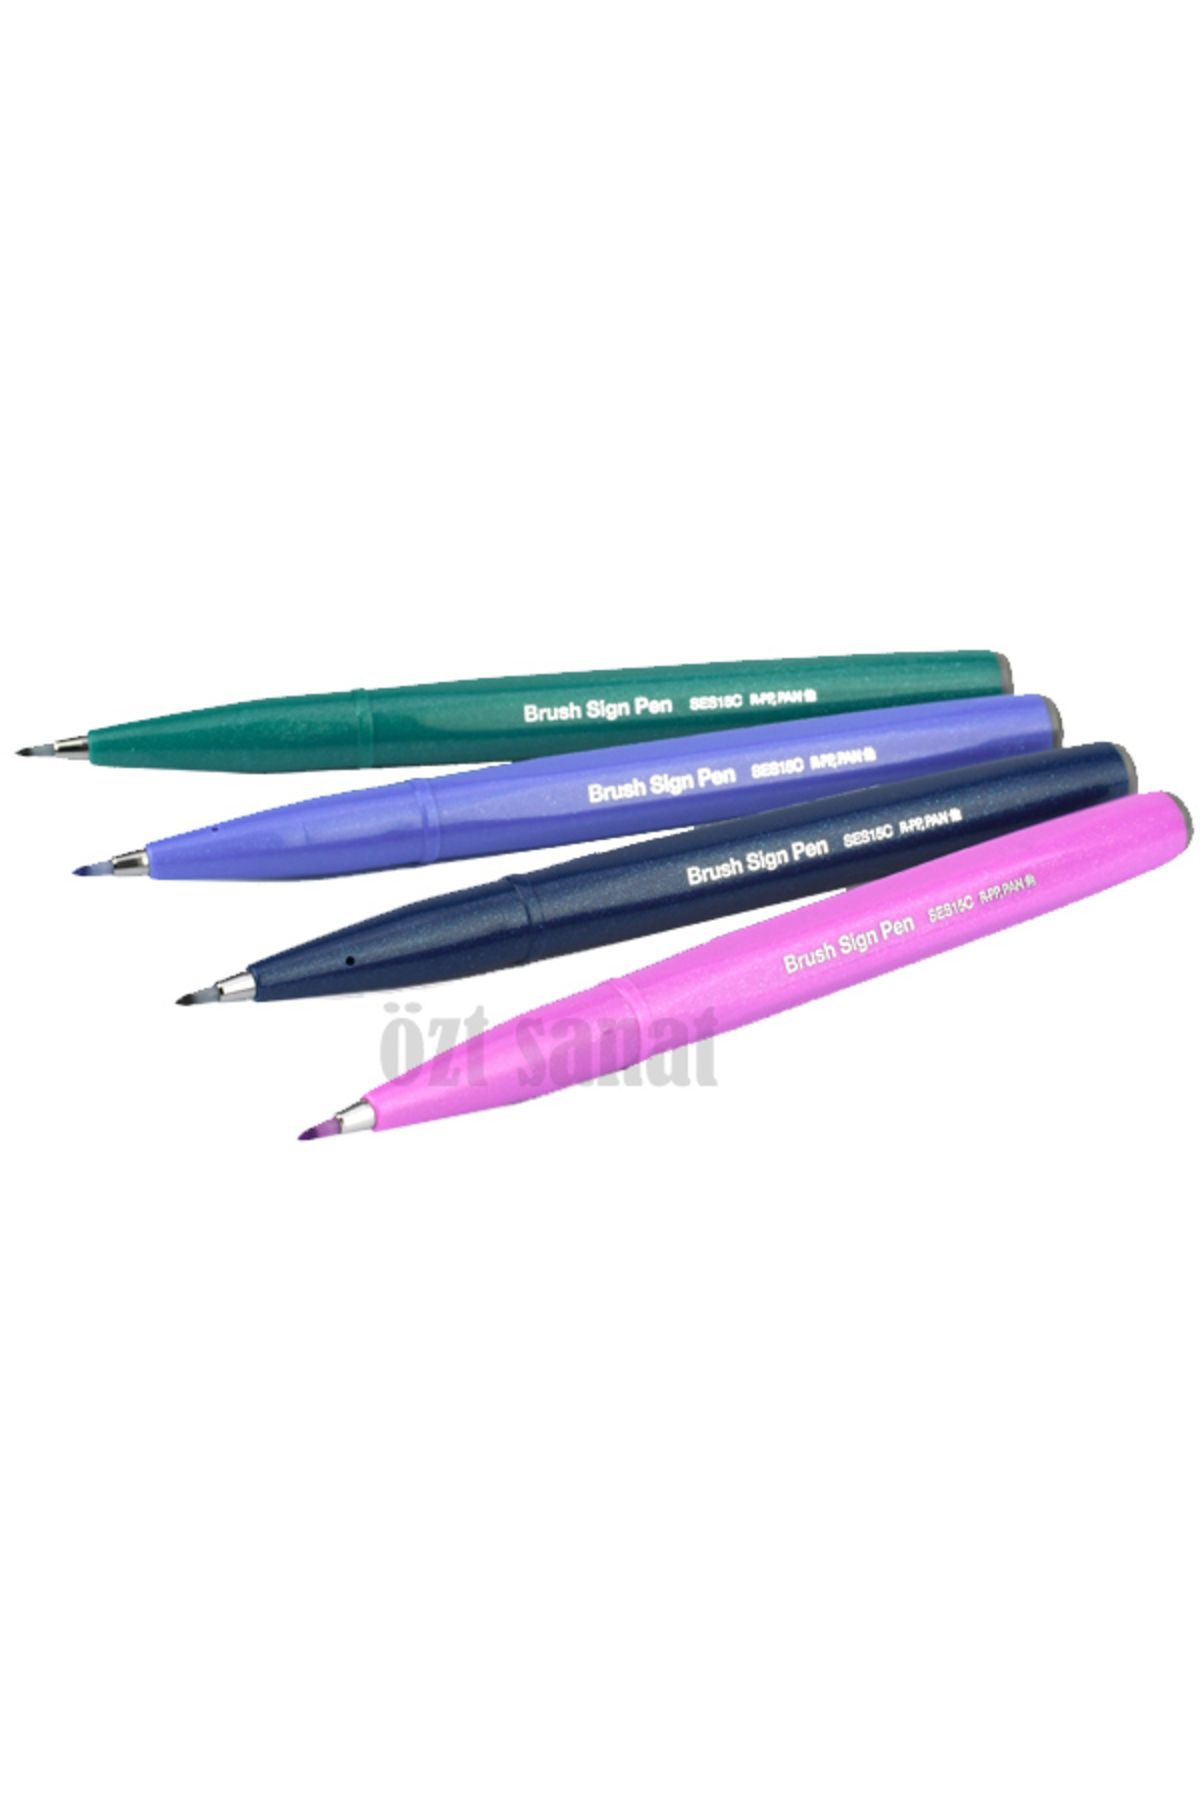 Pentel Brush Sign Pen Fırça Uçlu Kalem 4'lü Set - Berry Fiyatı, Yorumları -  Trendyol